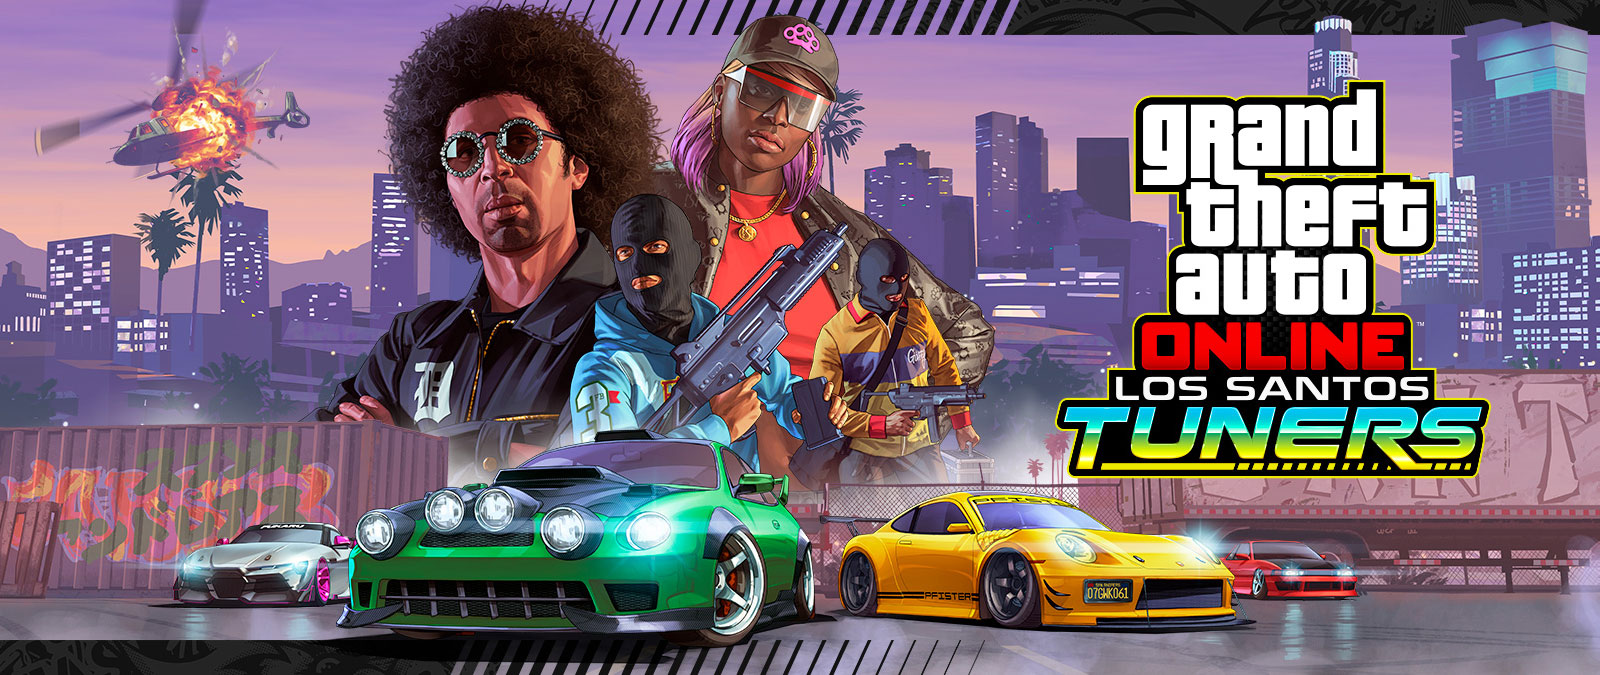 Grand Theft Auto Online, Los Santos Tuners. Cuatro personajes posando delante de los rascacielos de una ciudad con cuatro superdeportivos debajo de ellos 